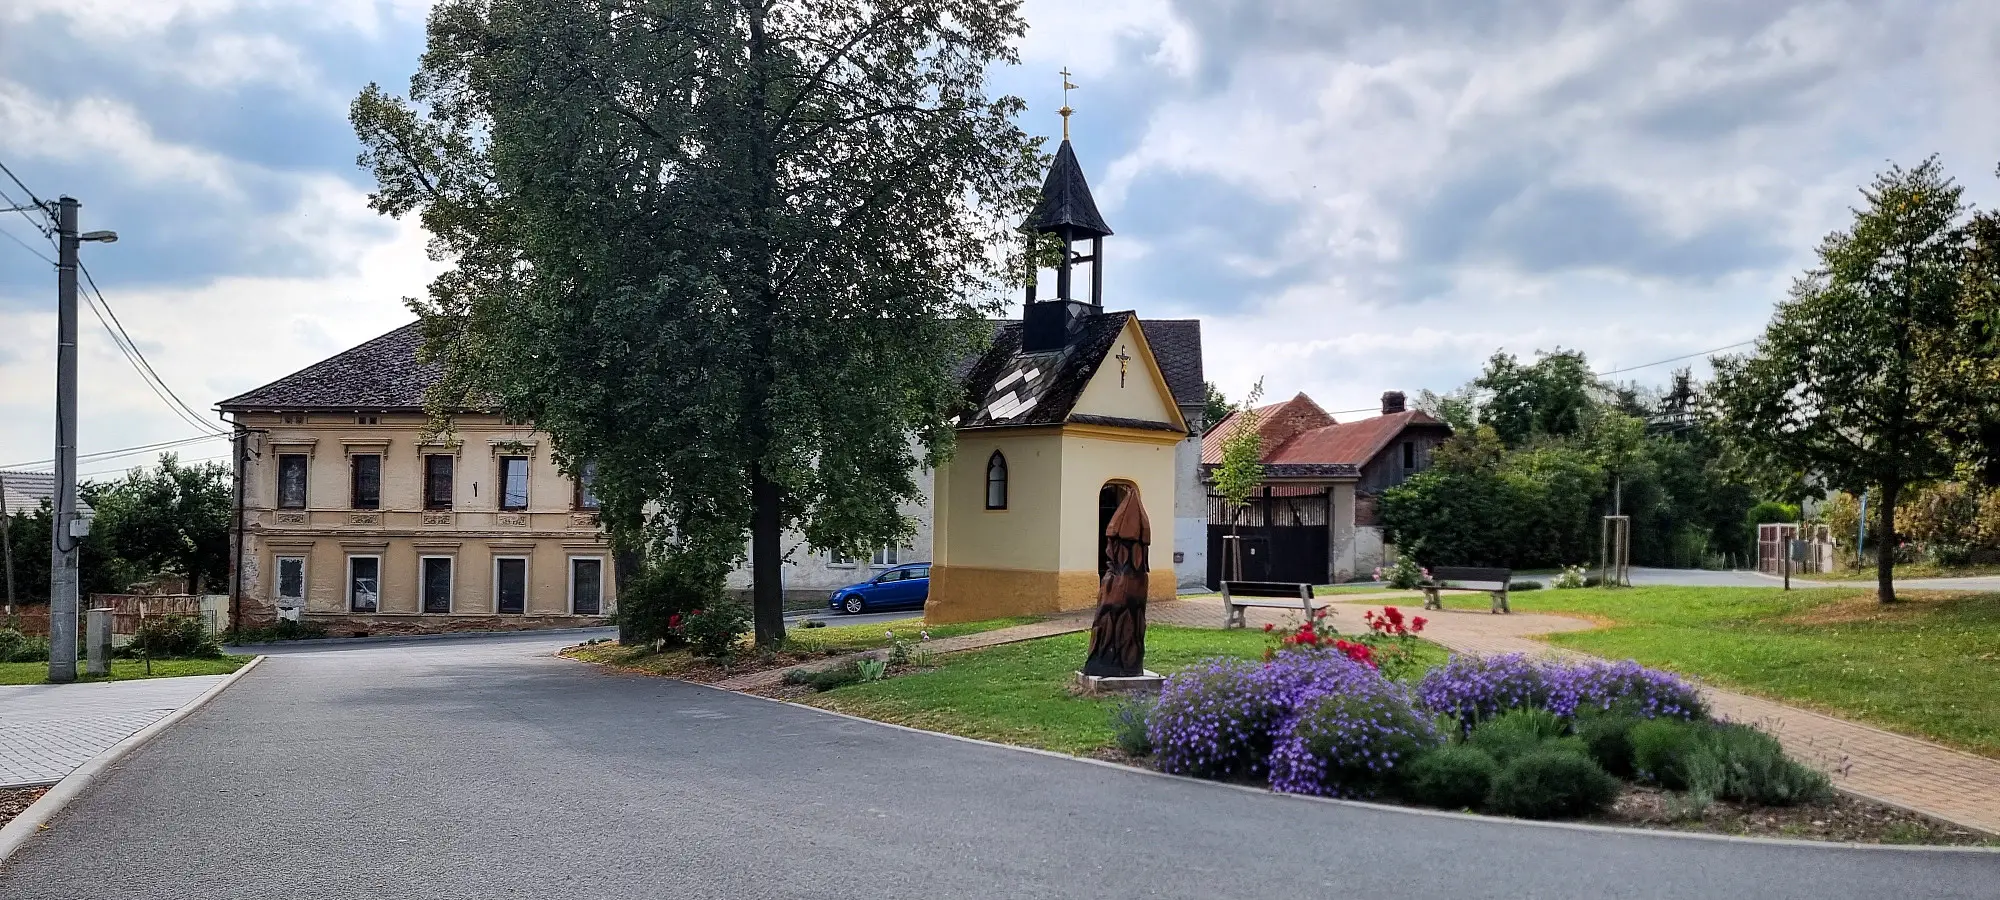 Medlov - Zadní Újezd, okres Olomouc